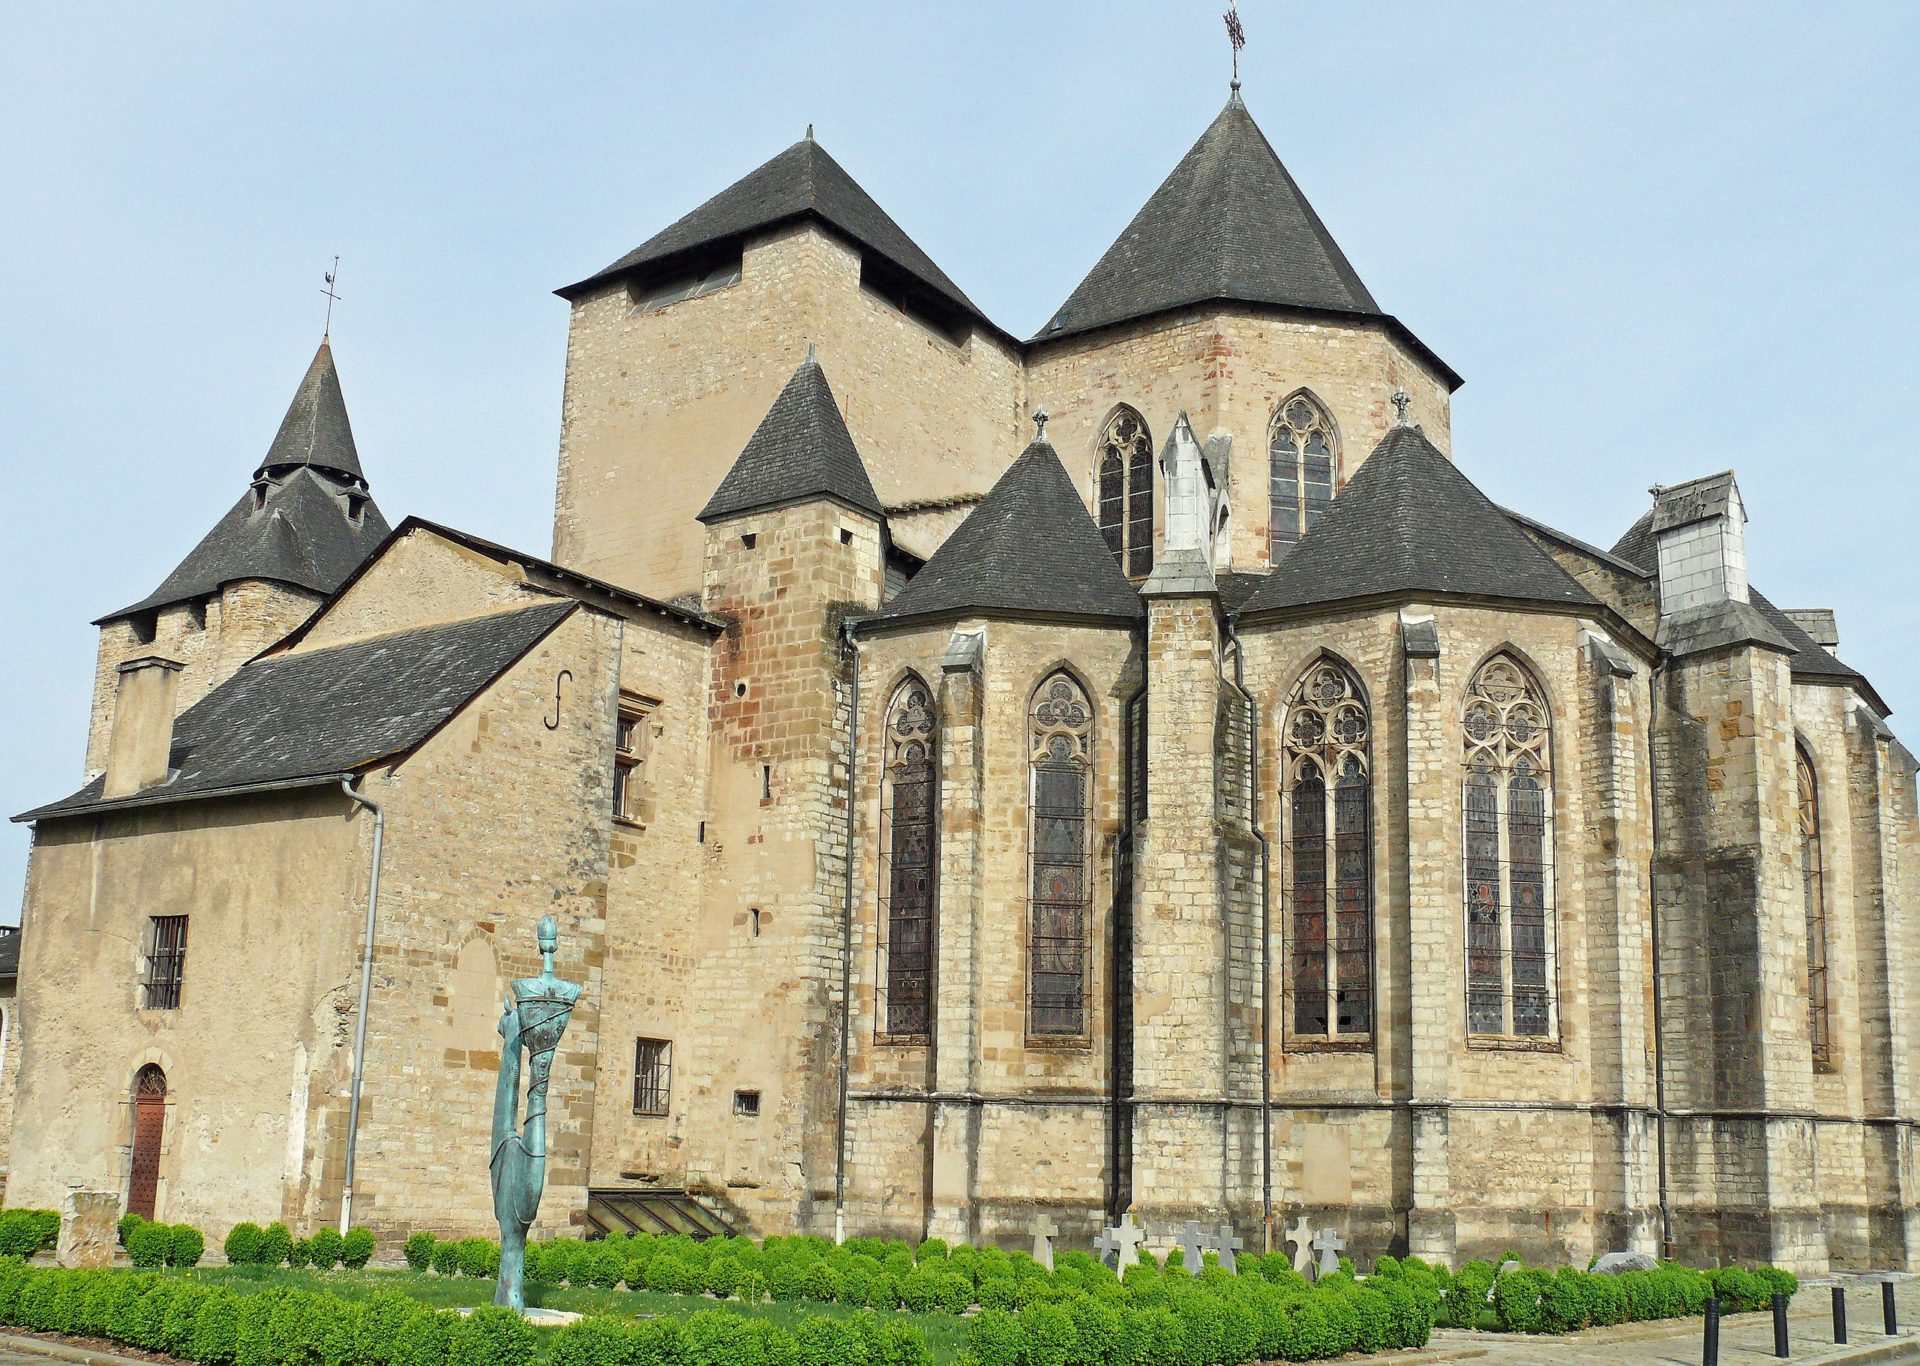 La cathédrale d'Oloron-Sainte-Marie a été attaquée à la voiture bélier et son trésor volé, dans la nuit du 3 au 4 novembre 2019 | © Mossot/Wikipédia/CC BY-SA 4.0